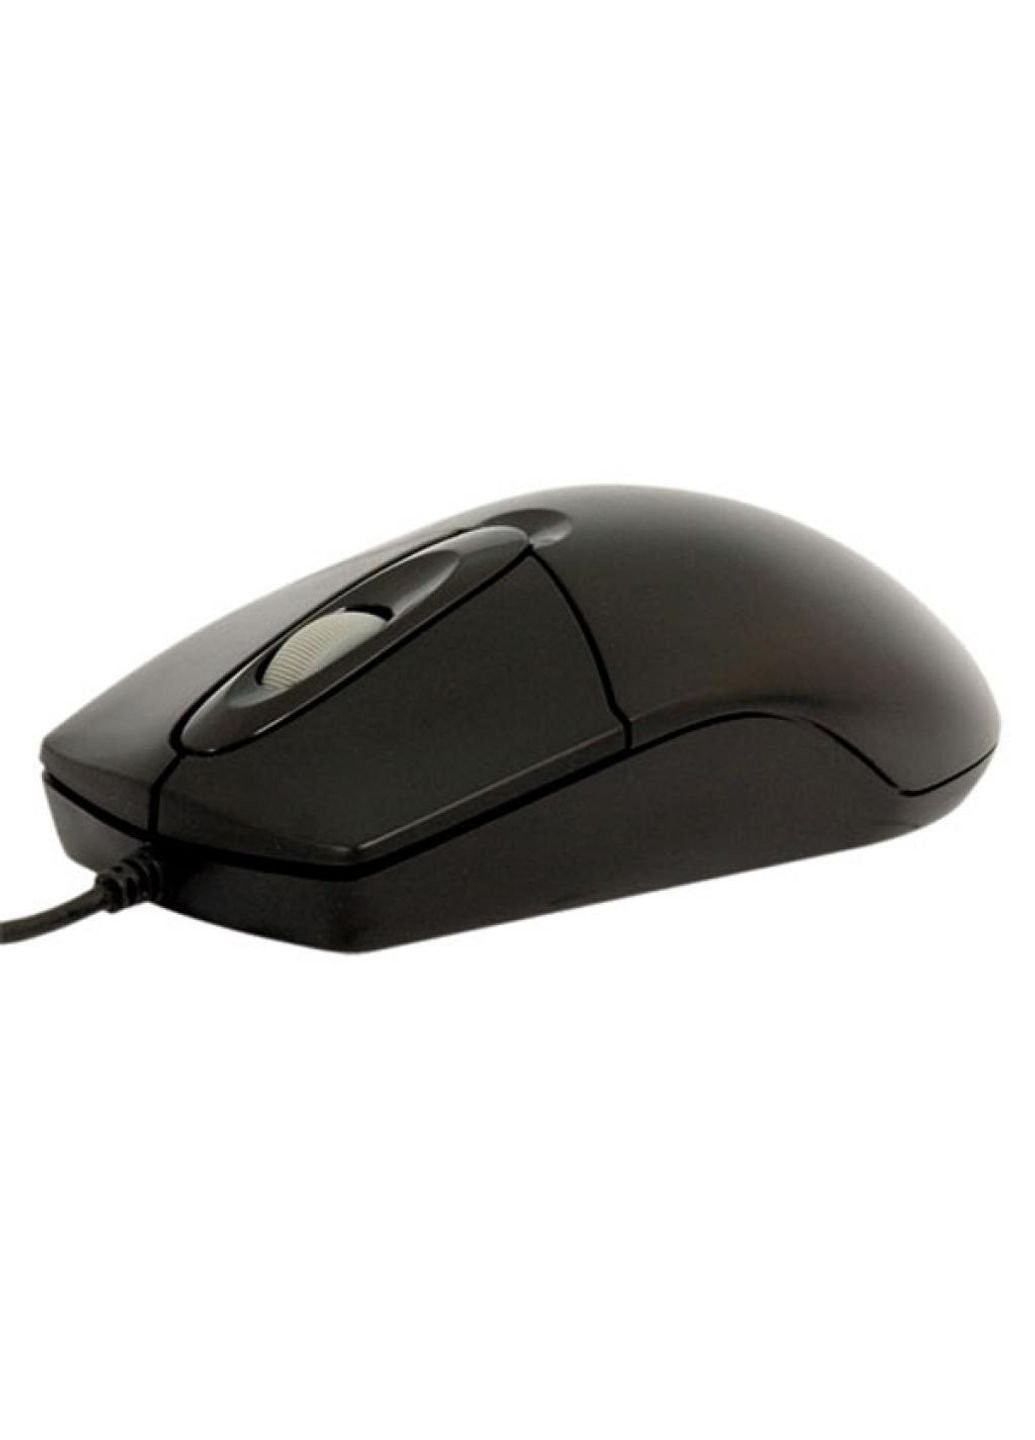 Мышка OP-720 Black-PS/2 A4Tech (252633894)